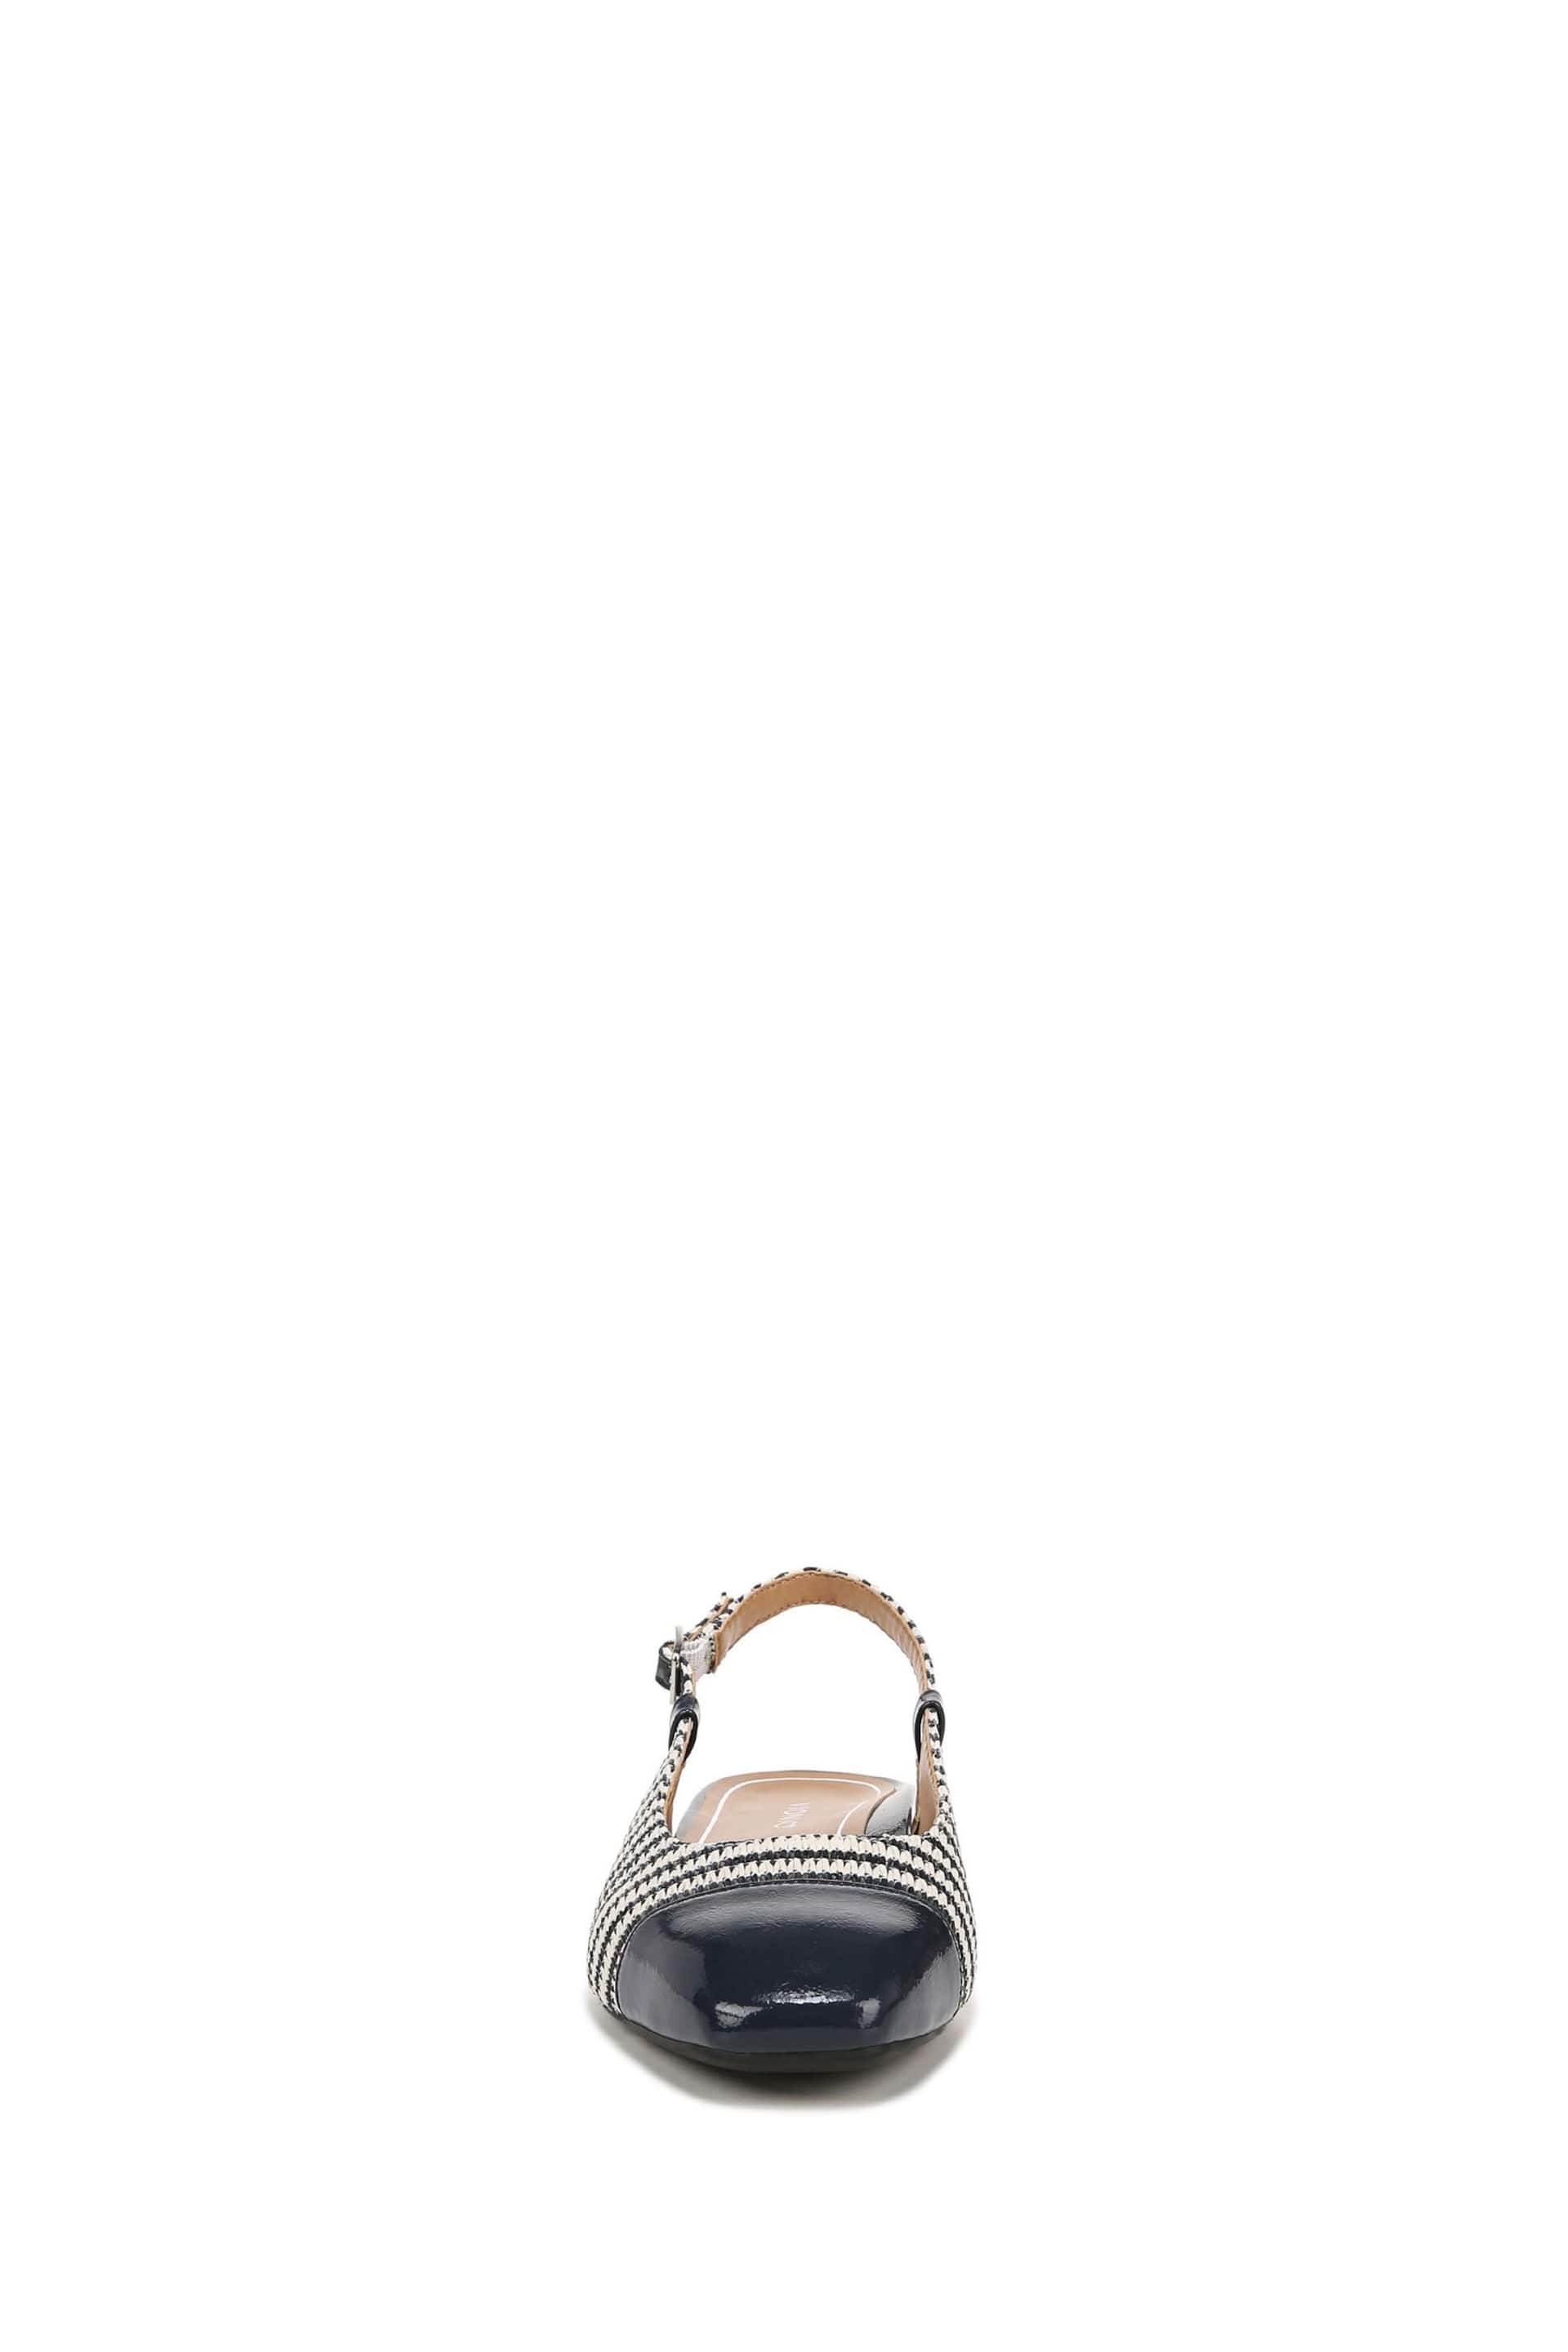 Vionic Petaluma Slingback Shoes - Image 4 of 7